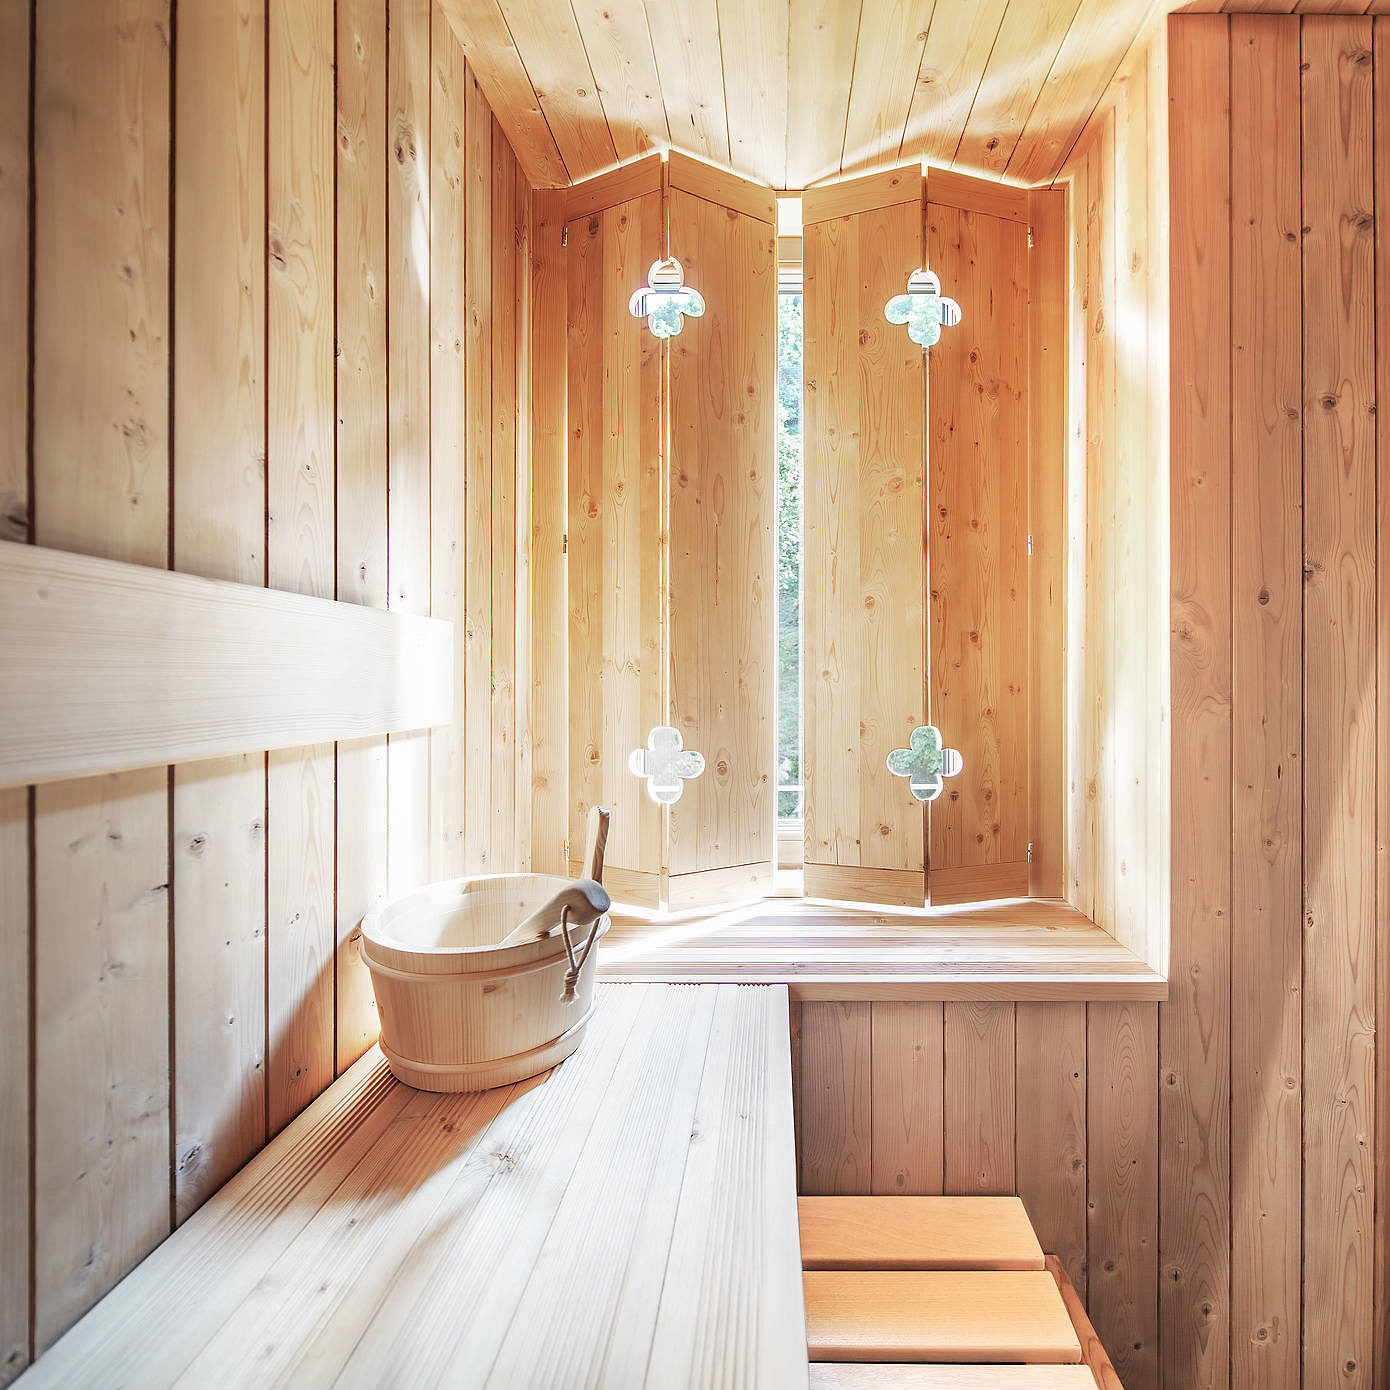 Deze kamer in natuurthema heeft een rond jacuzzi bad, een inloopdouche én een sauna!